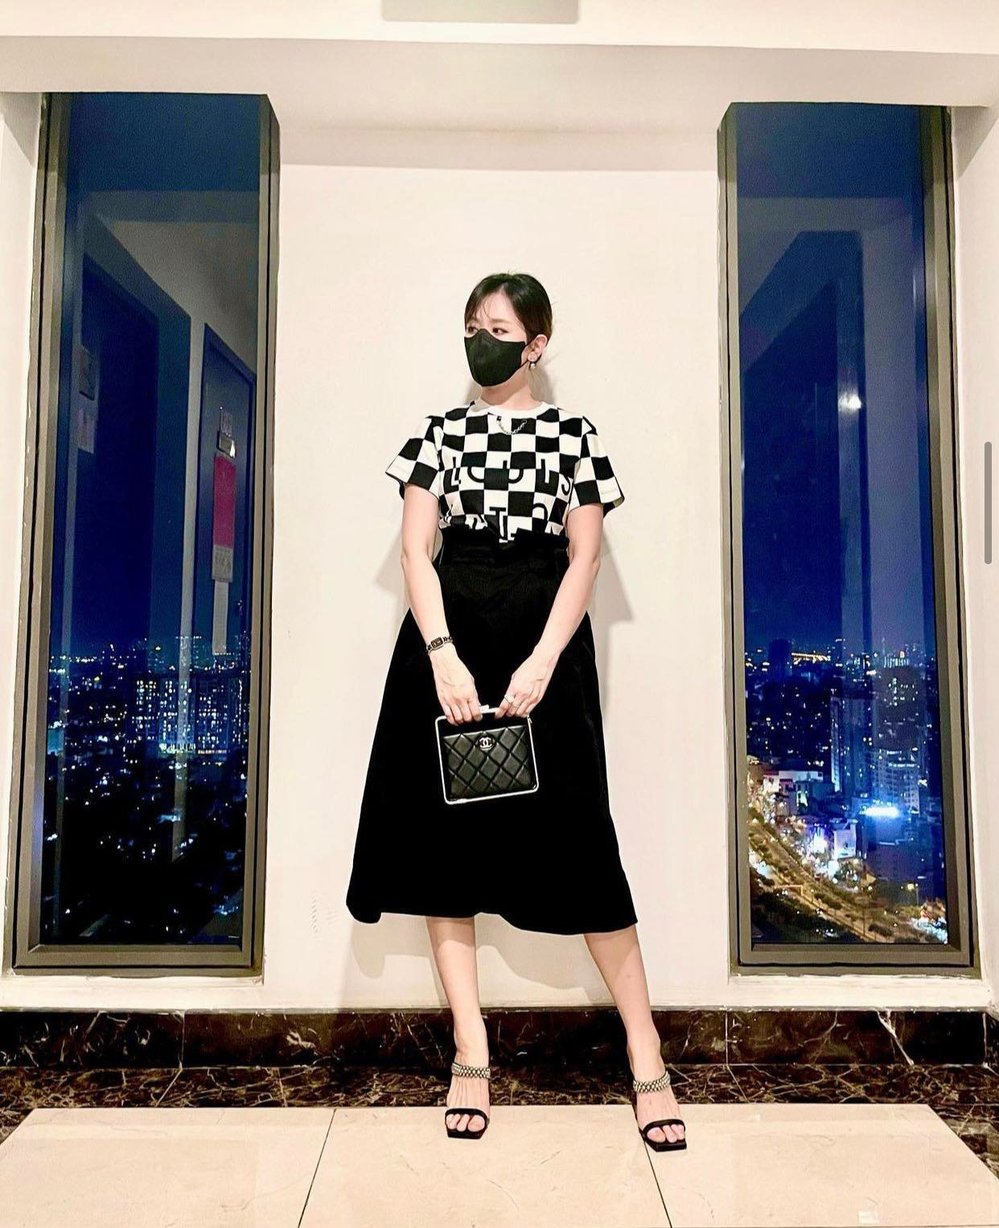  
Cận cảnh outfit khiến cô bị nghi có bầu gần đây nhất. (Ảnh: Instagram wonhari)